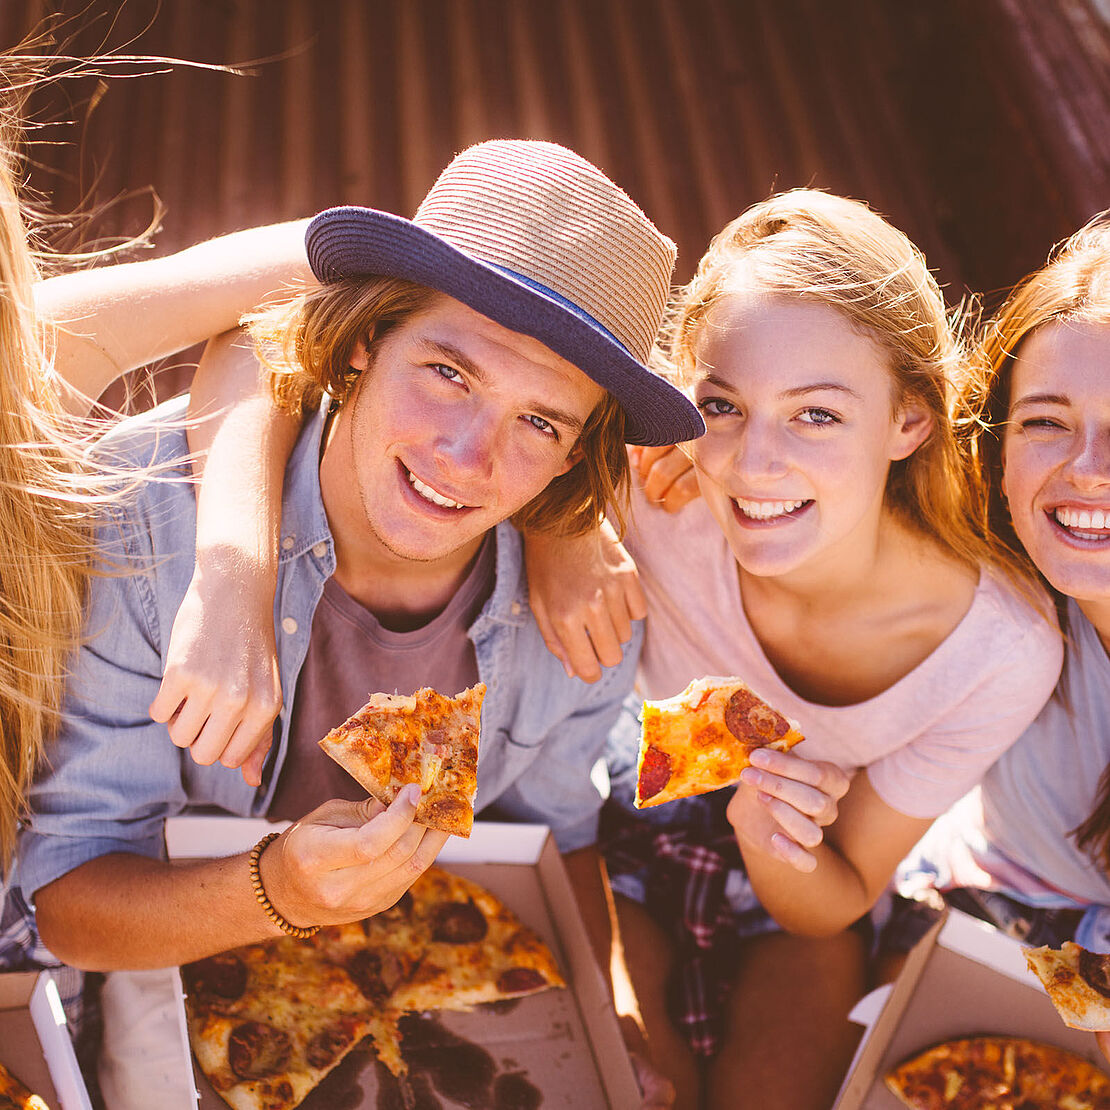 Eine ausgewogene Ernährung ist auch im Teenageralter wichtig – Es kann auch mal eine leckere Pizza sein. 